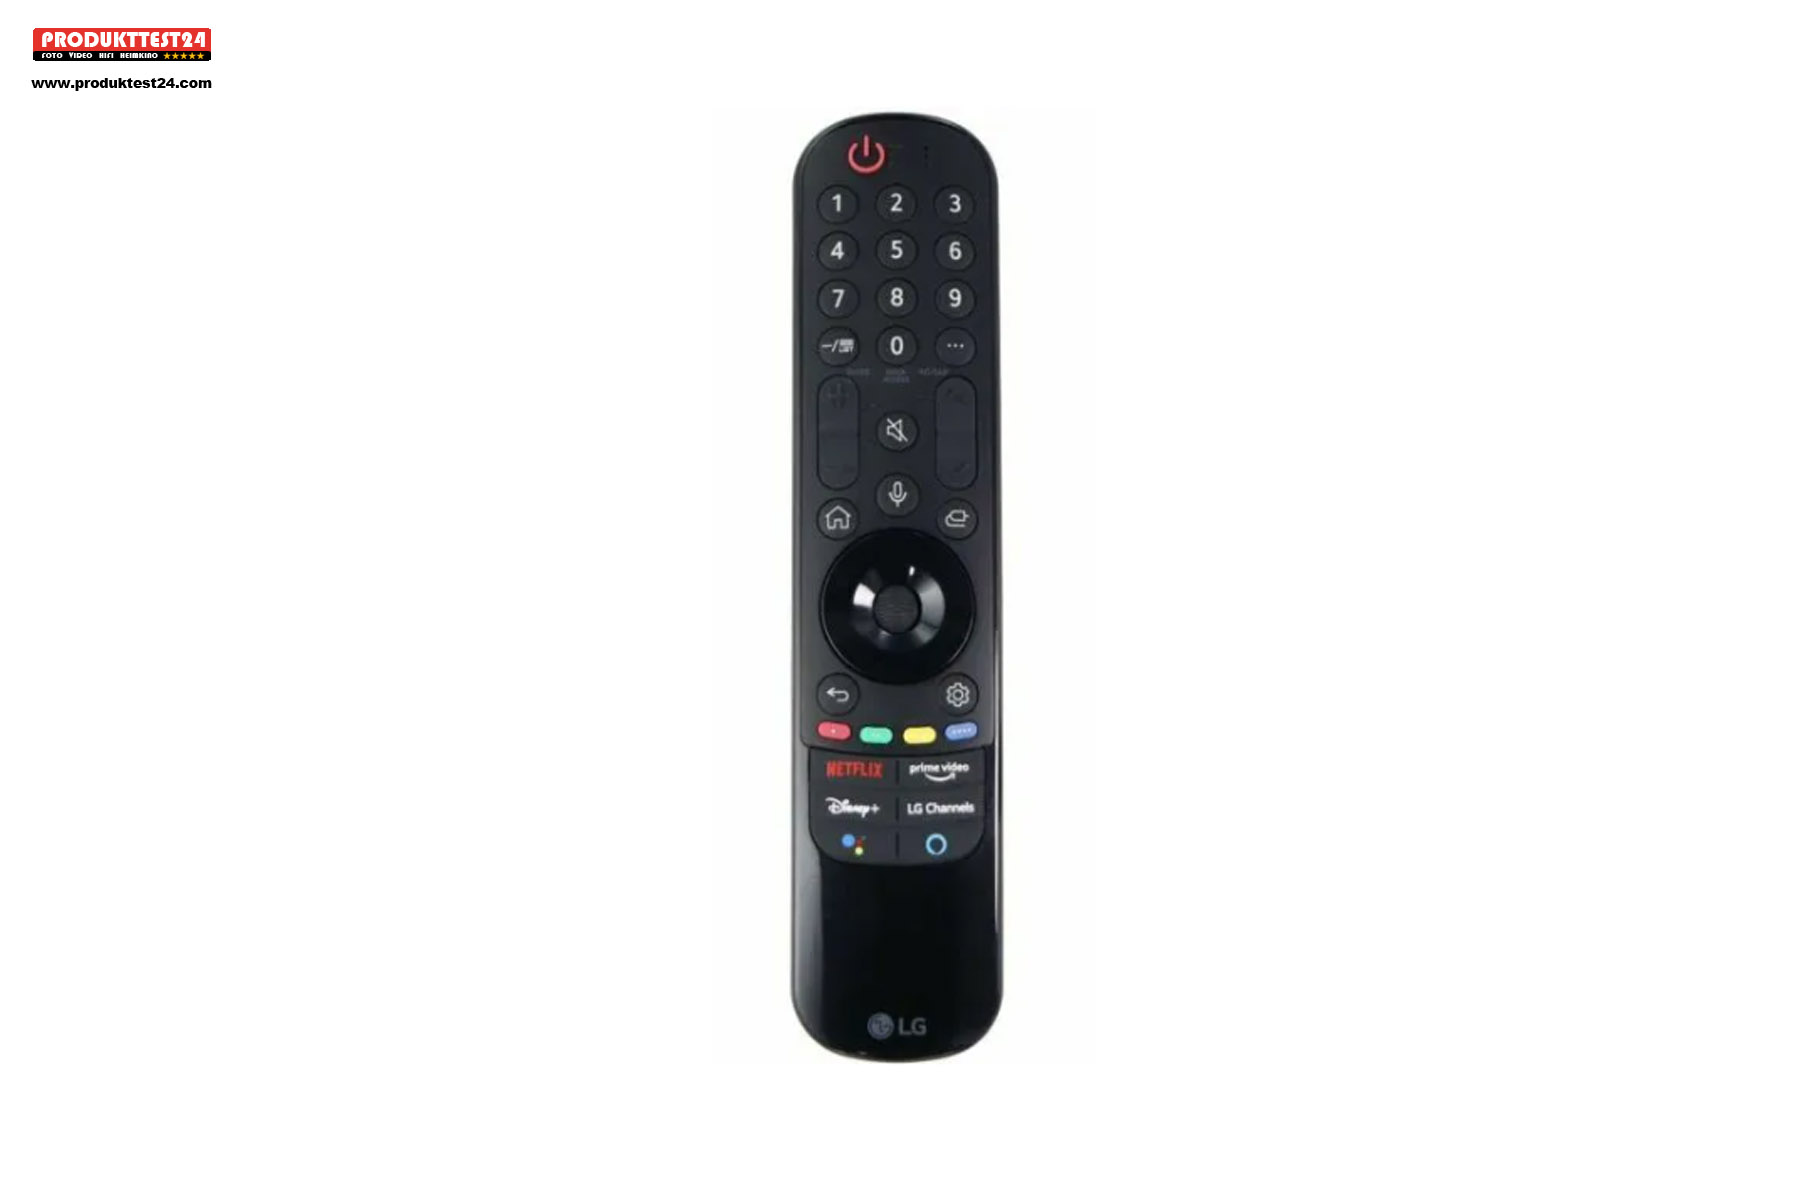 Die Magic Remote Fernbedienung hat separate Tasten für die Streamingdienste.